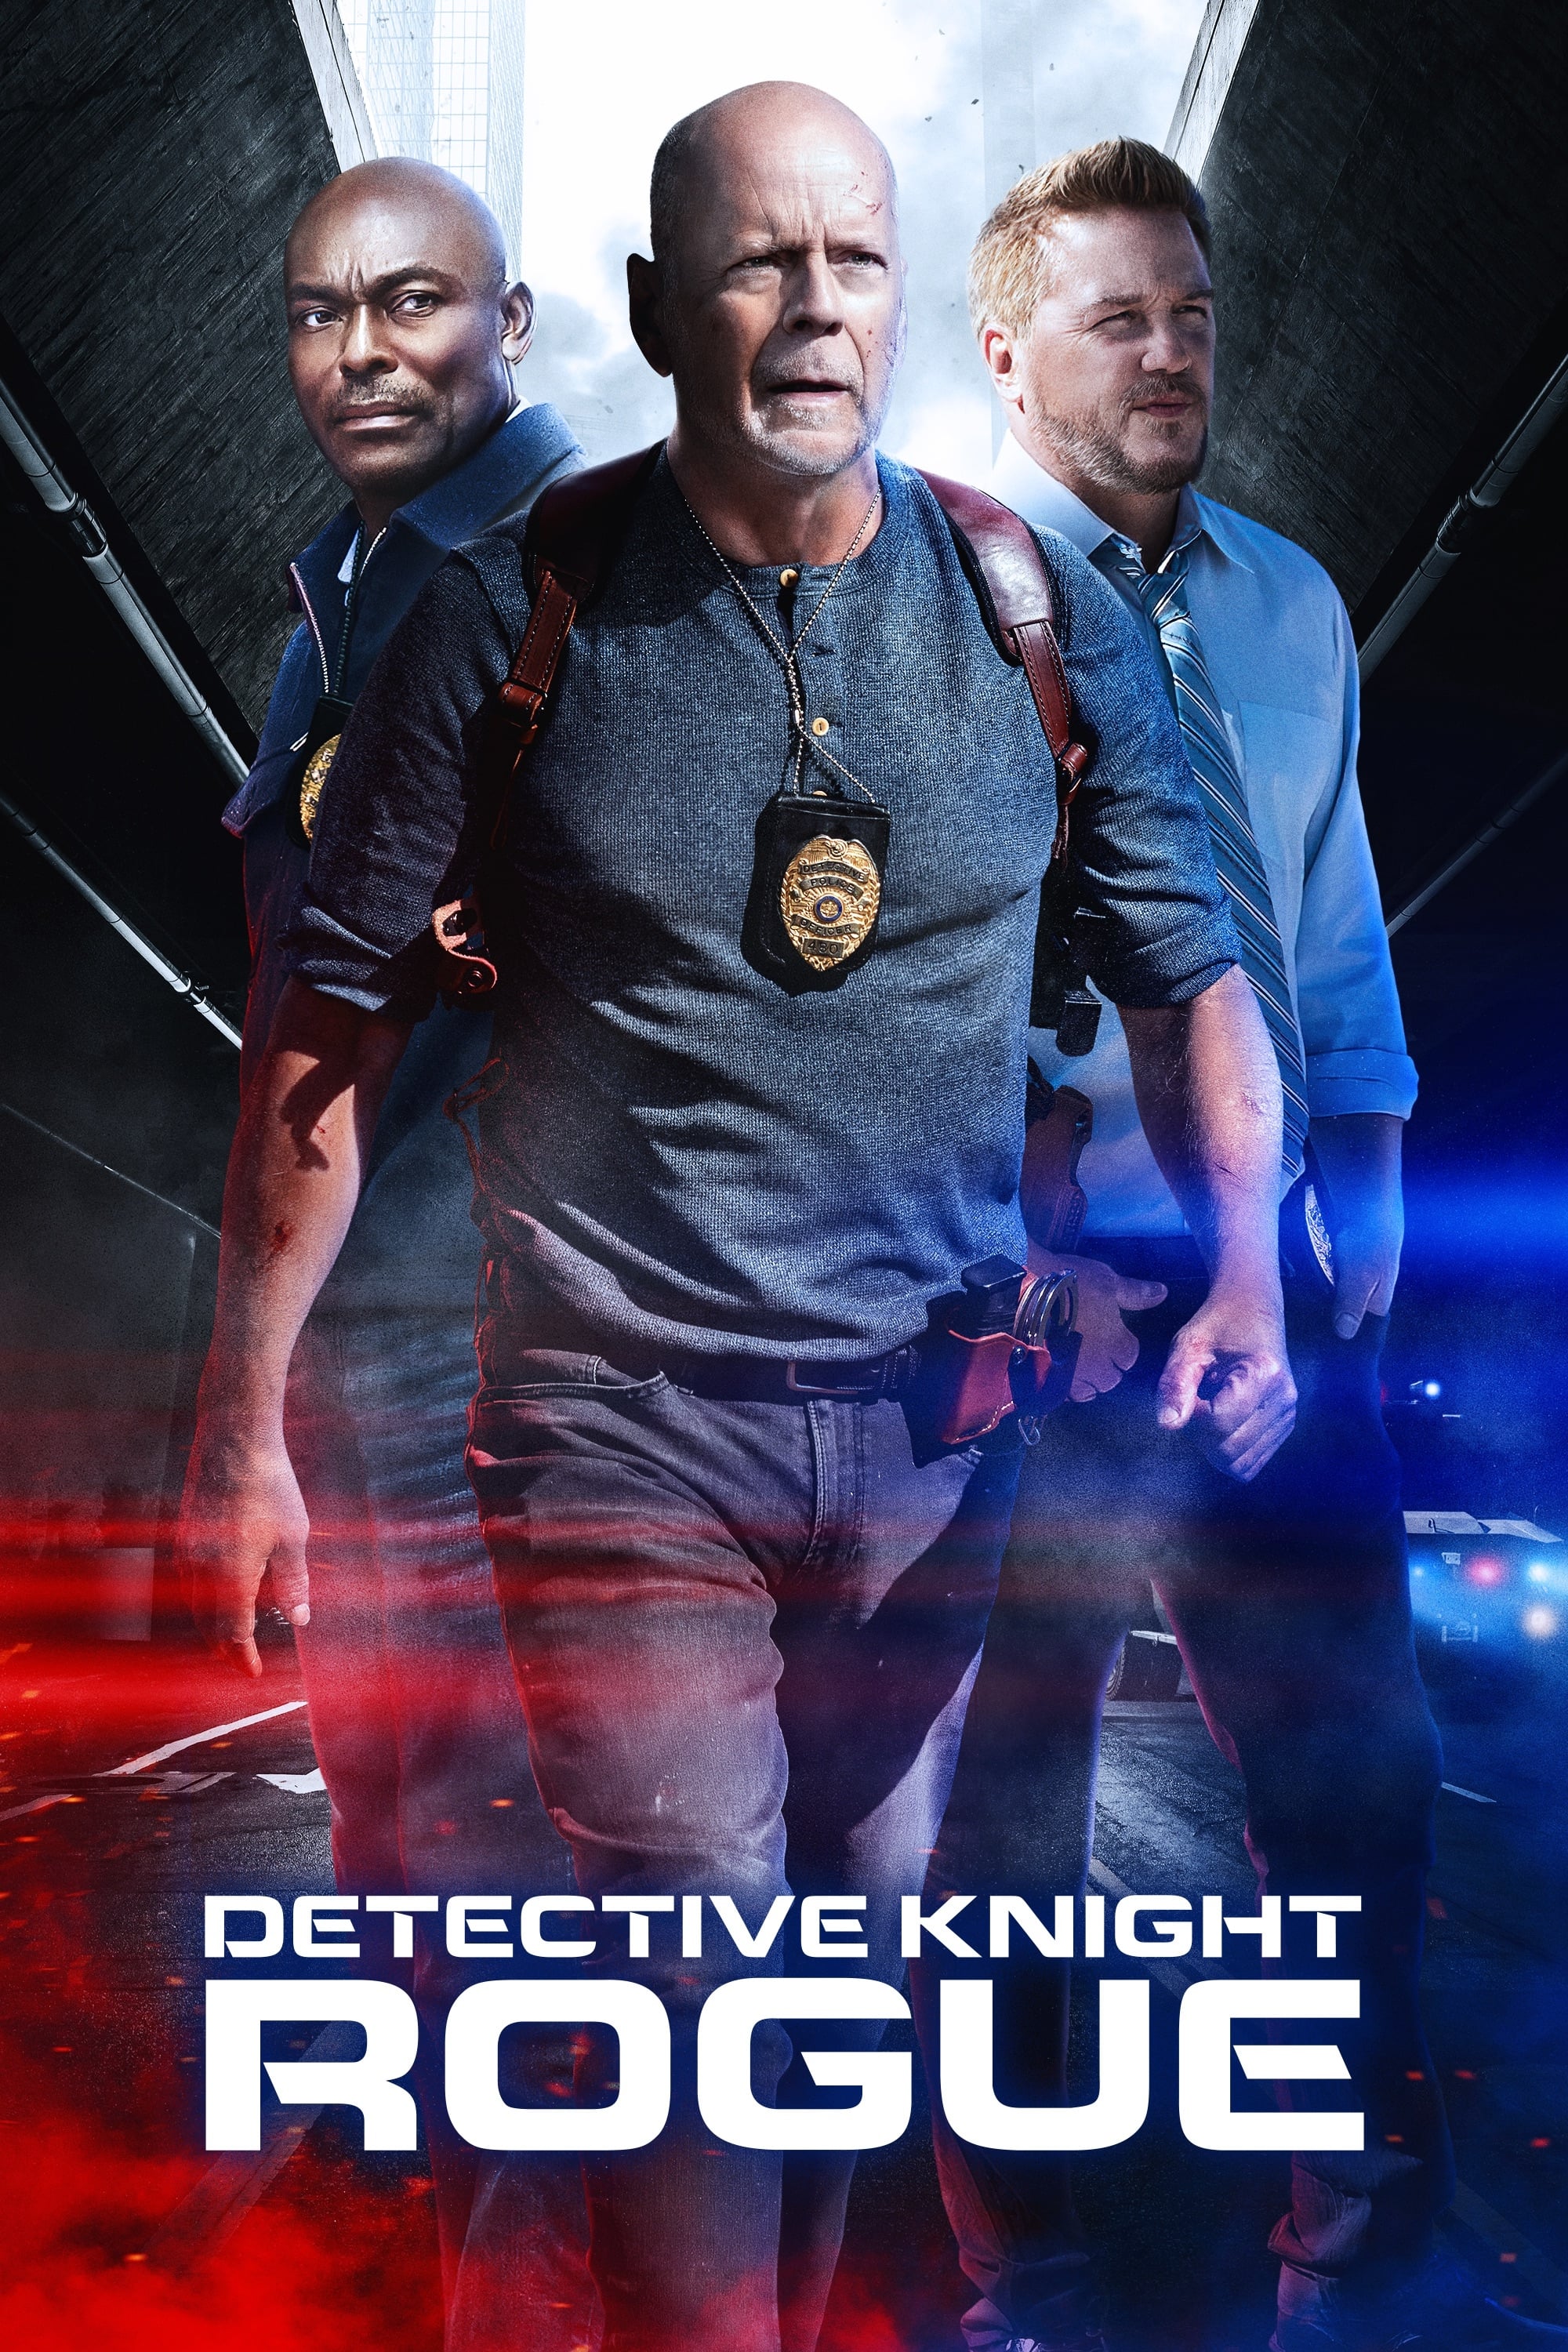 Detective Knight: sin piedad